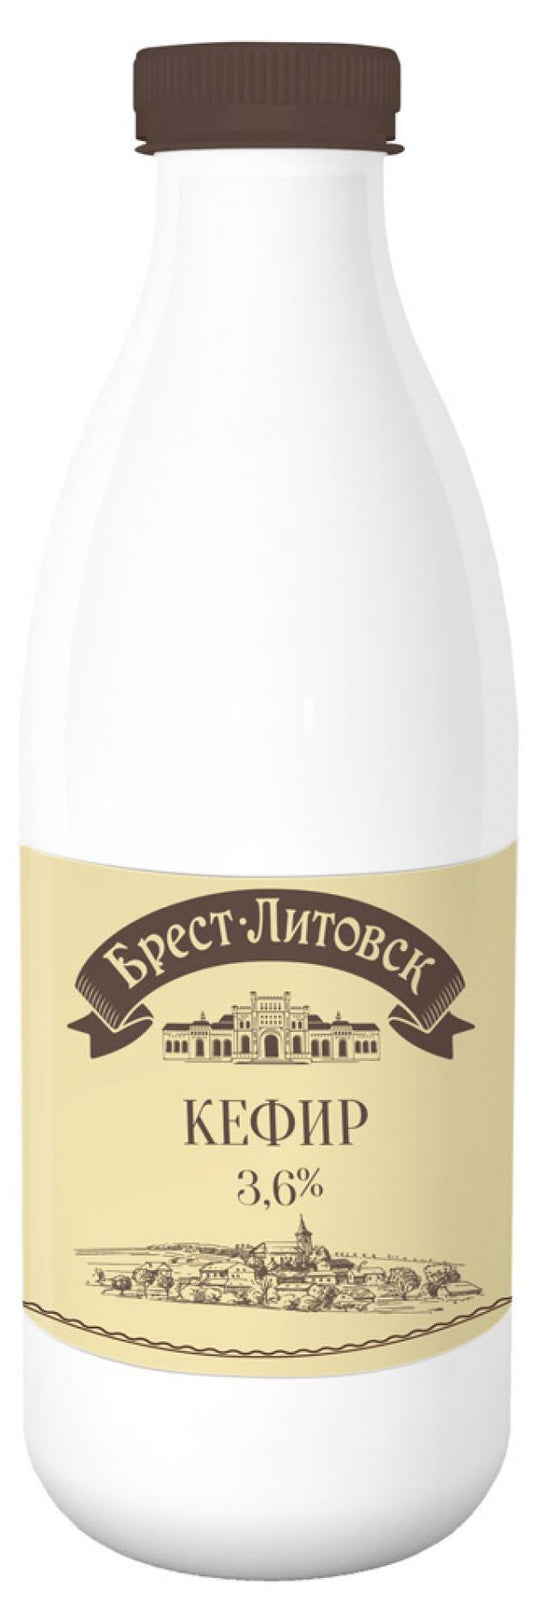 Kefir "Brest-Litovsk" 3.2%（Кефир 3.2%） 950g